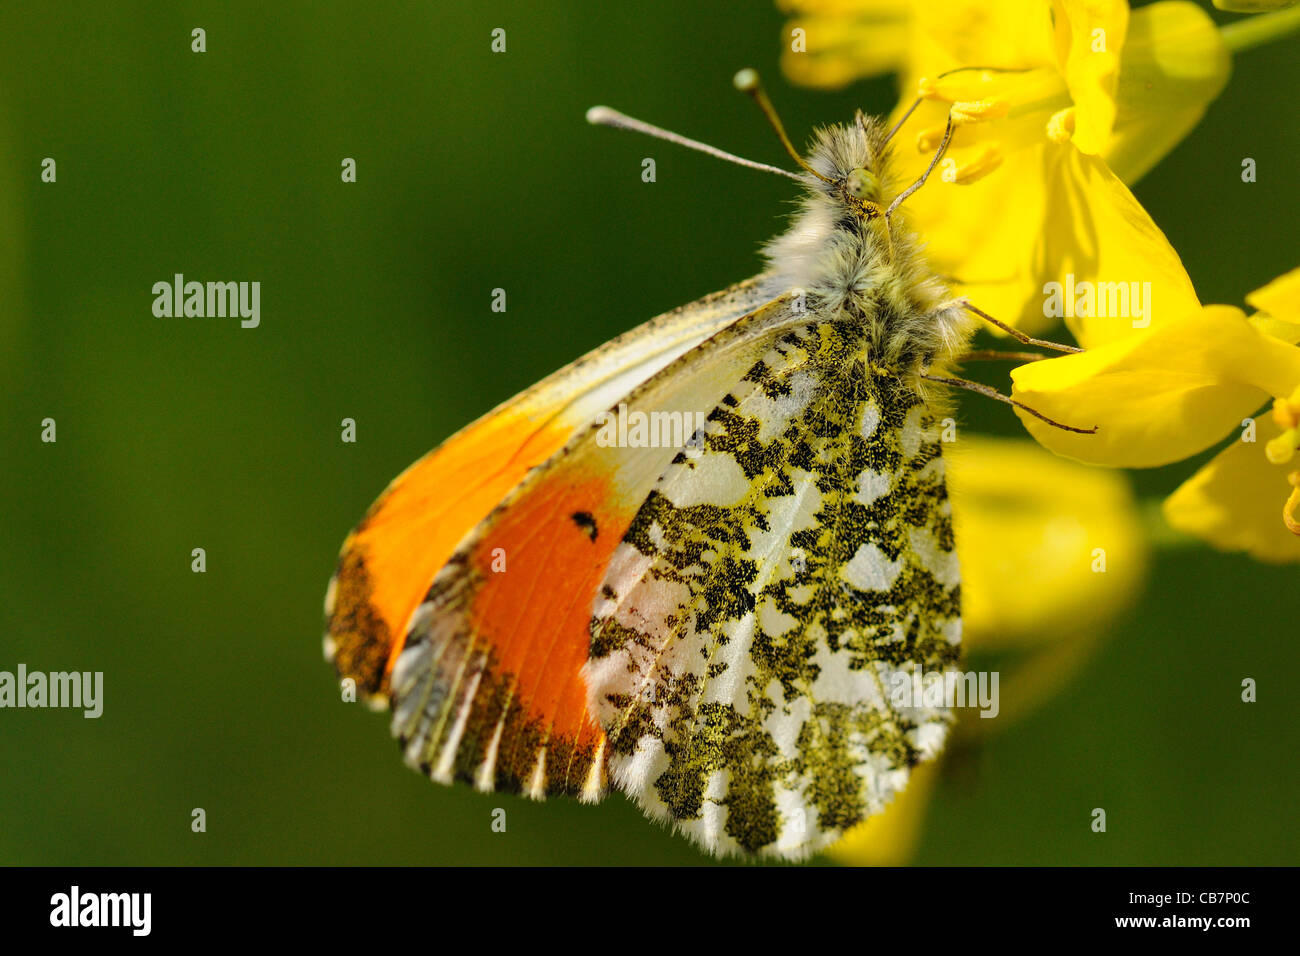 Mariposa de punta naranja macho alimentándose de semillas de colza (alas cerradas) Foto de stock